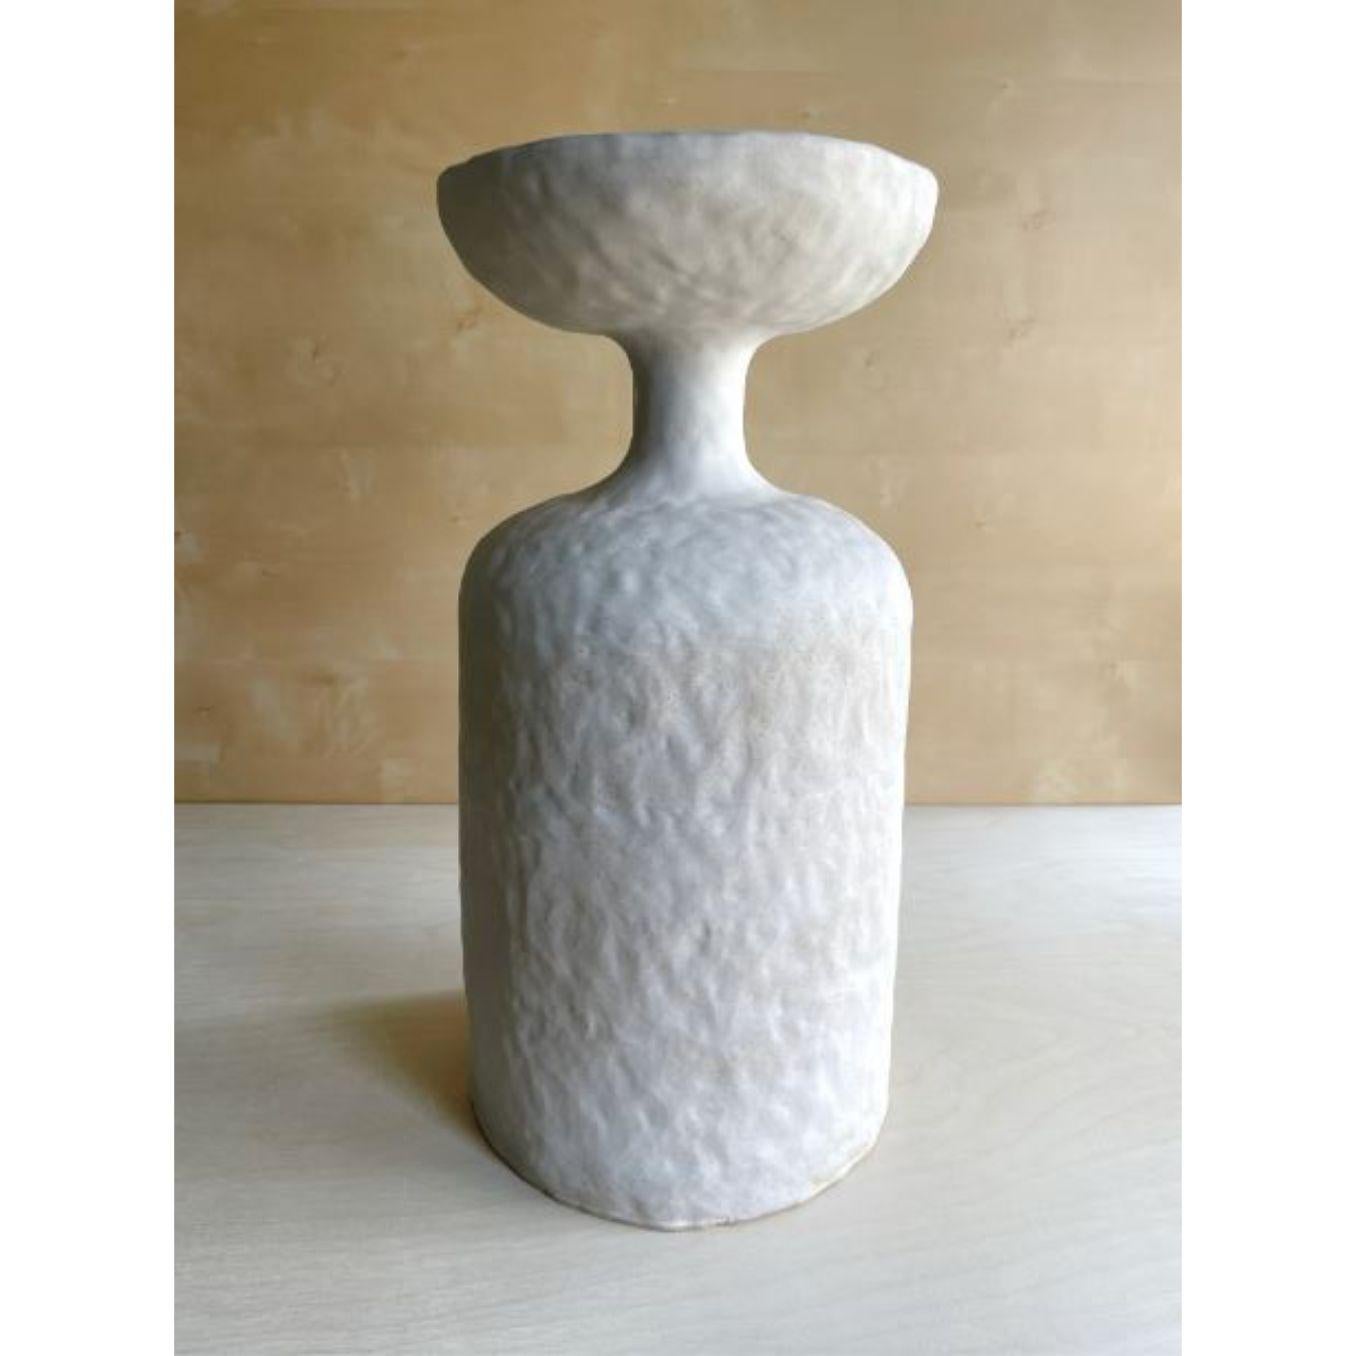 Table d'appoint John de Meg Morrison
Matériaux : Céramique
Dimensions : L 24,5 x P 24,5 x H 50 cm

Vase en céramique sculpté à la main, d'un bleu tendre comme l'œuf de merle. Étanche pour les fleurs. Comprend une feuille de liège pour protéger la